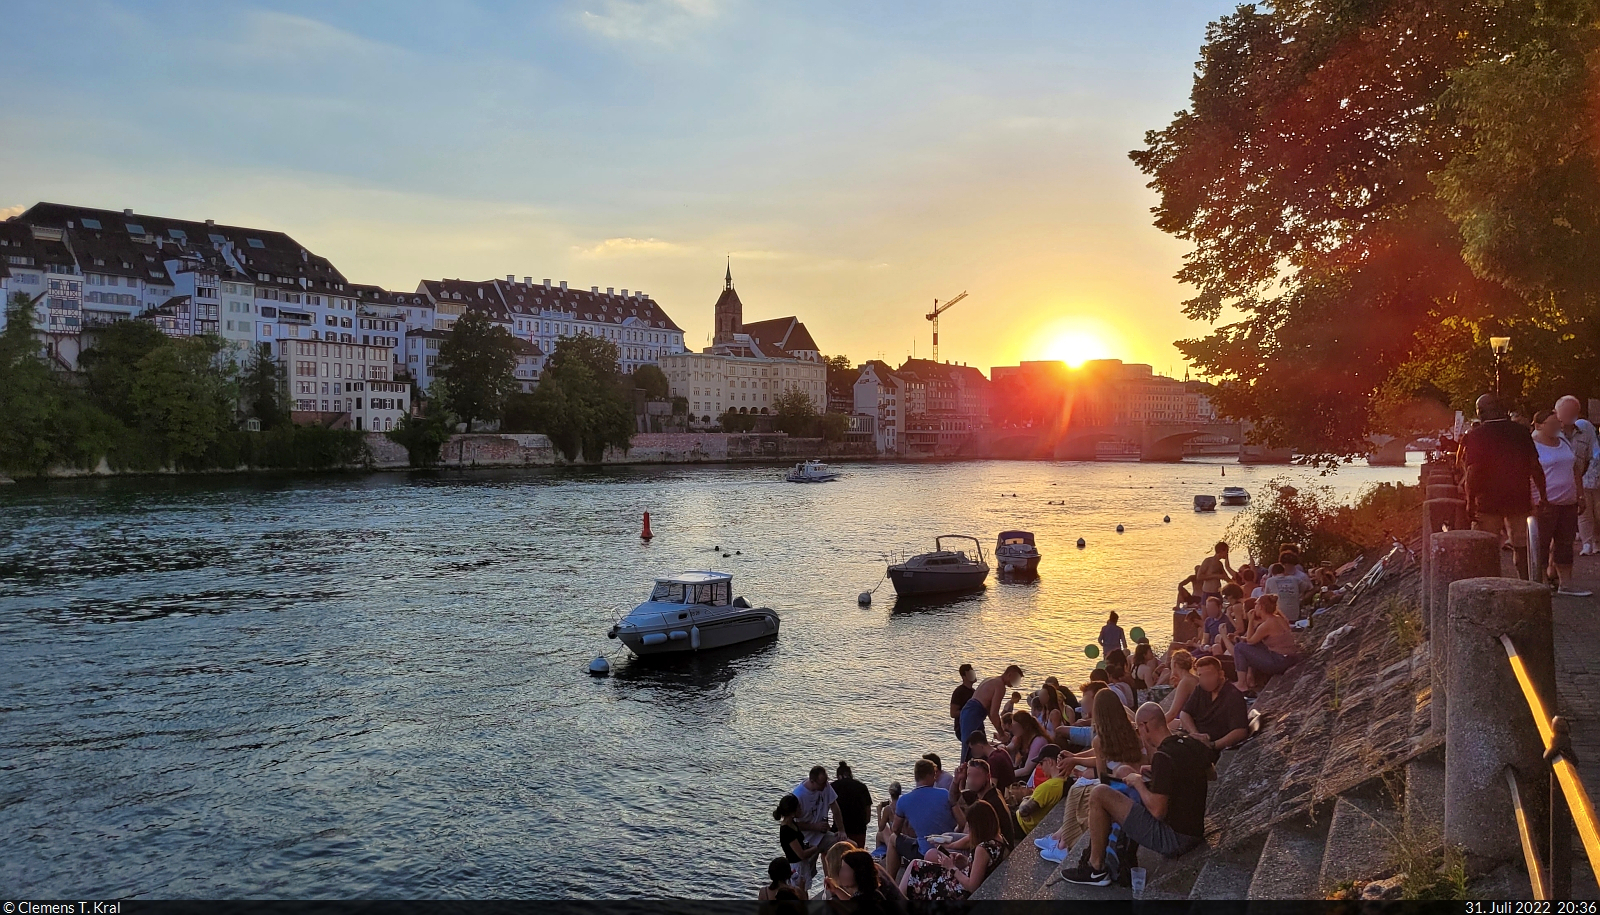 Während die Sonne verschwindet, herrscht am Rheinufer in Basel (CH) noch reges Treiben. Traditionell wird immer am 31. Juli in den Schweizer Nationalfeiertag hineingefeiert.

🕓 31.7.2022 | 20:36 Uhr